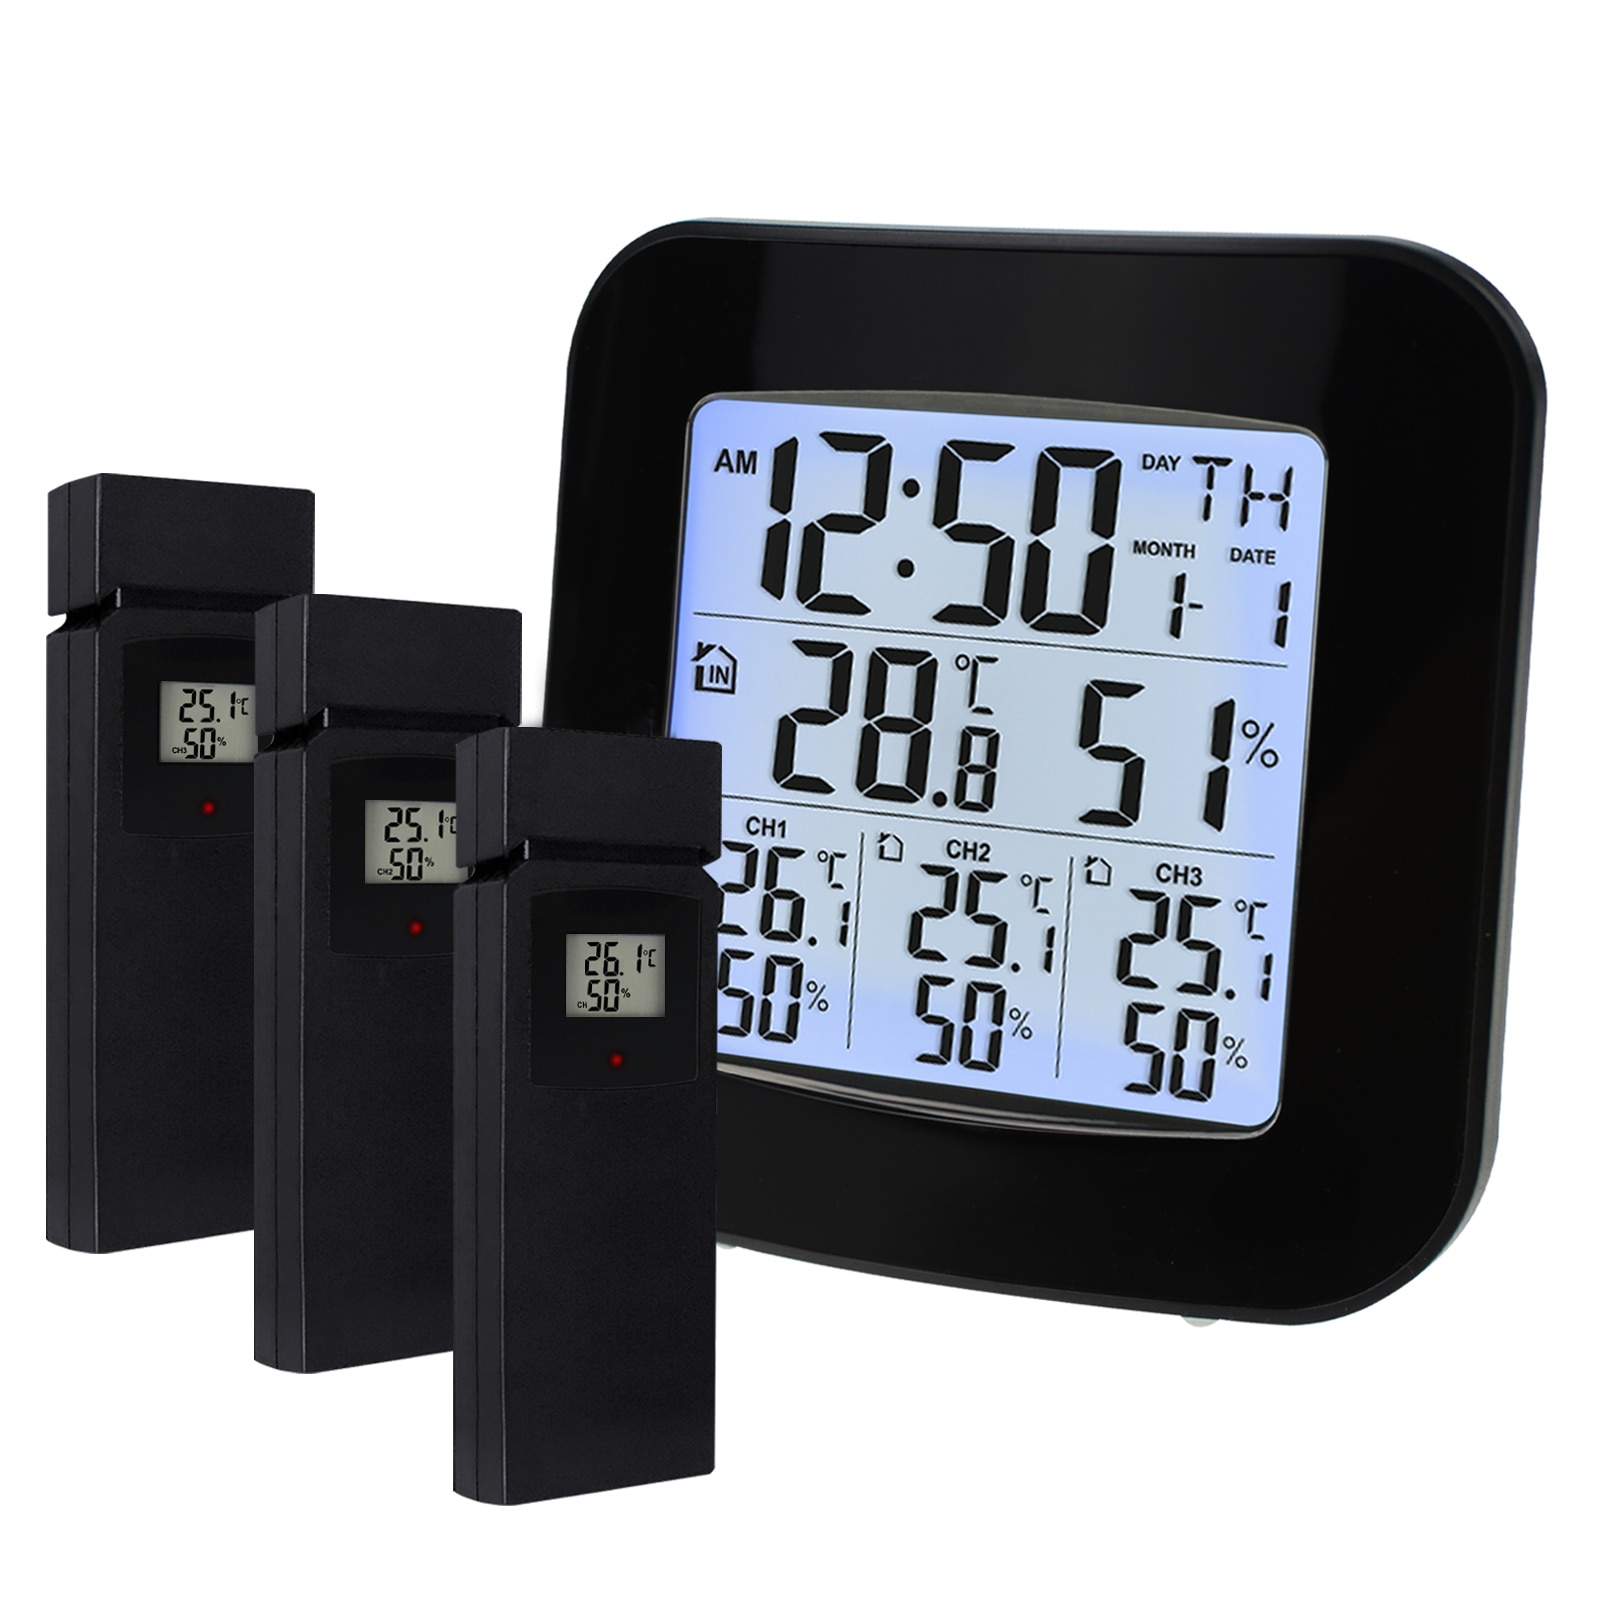 Vejrstation m / 3 indendørs / udendørs trådløse sensorer digitalt termometer hygrometer sort led lcd display temperatur og fugtighed